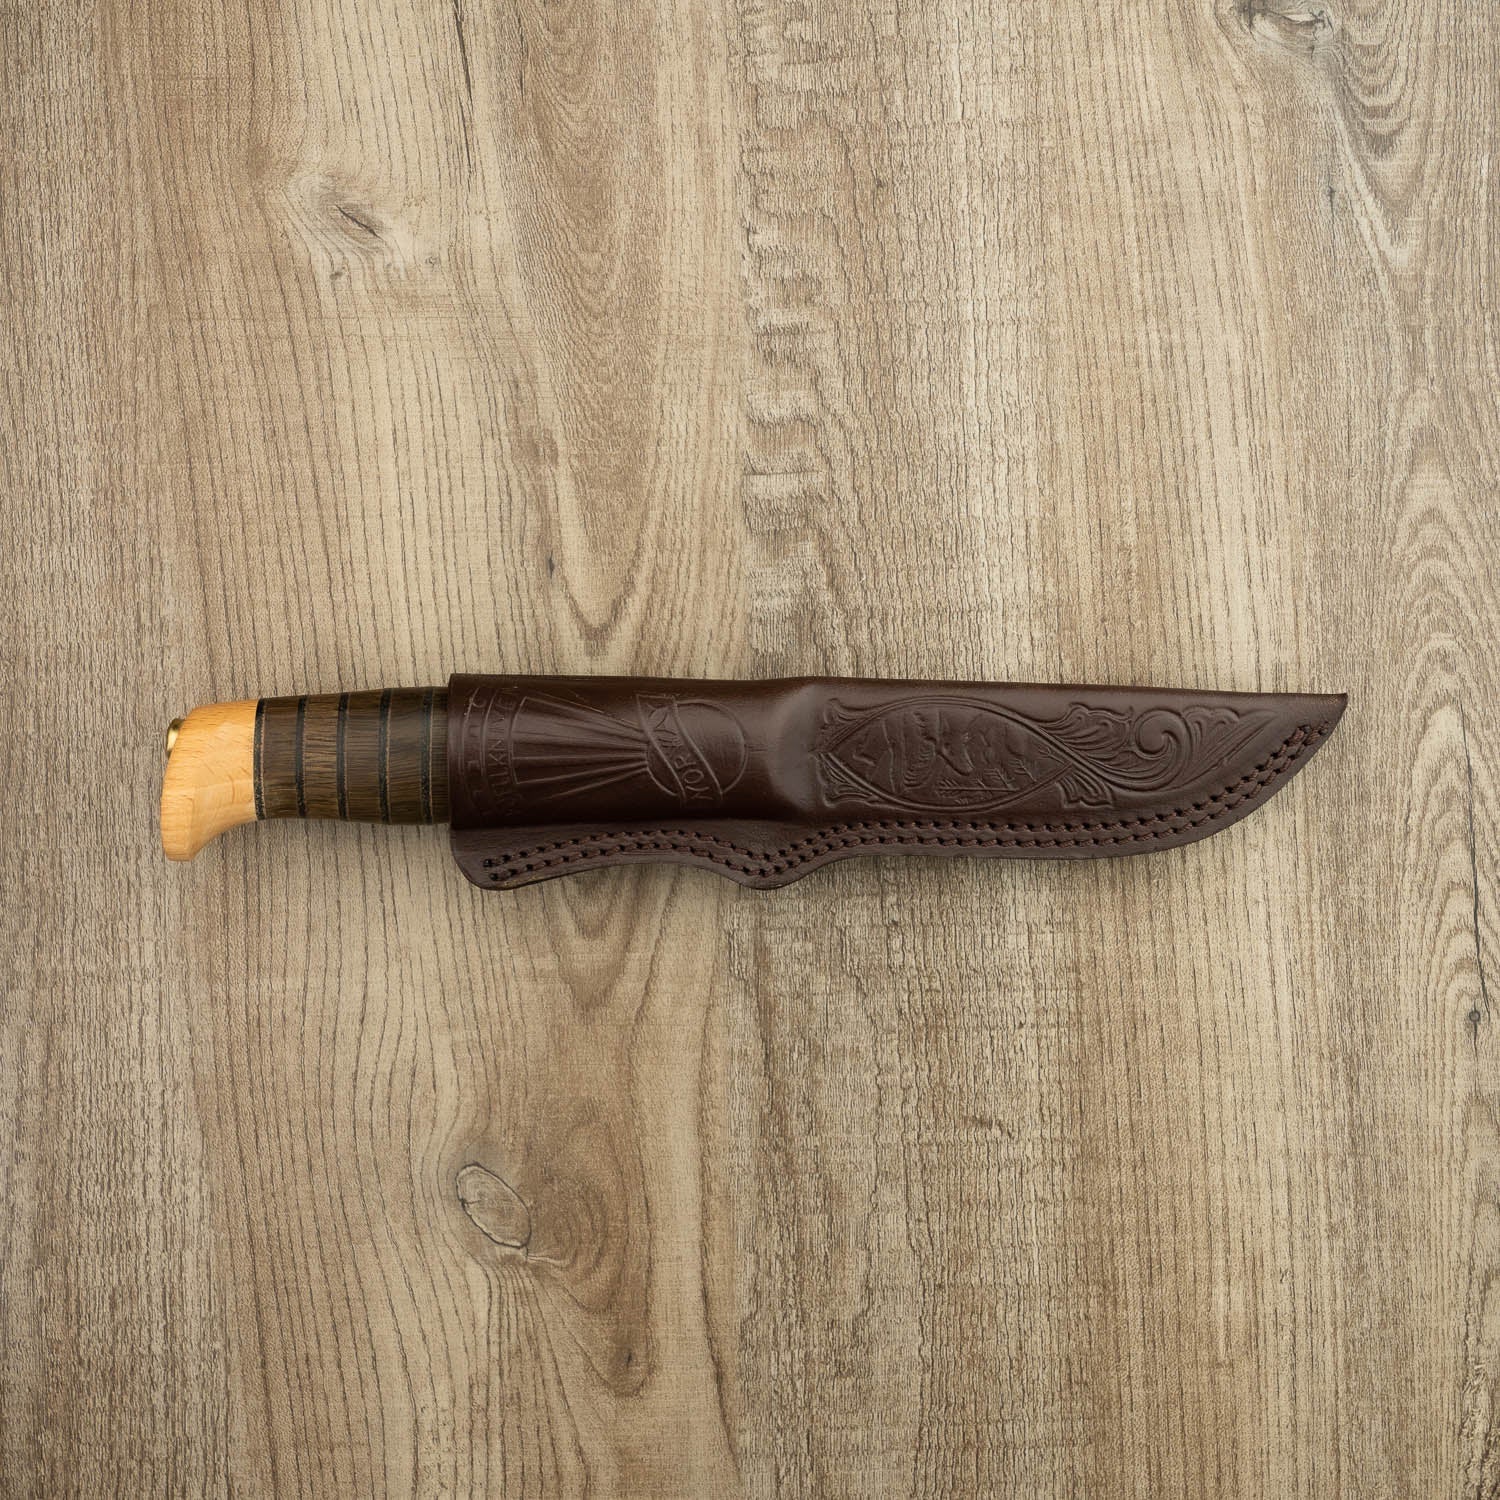 Helle Knives Sigmund 107mm Hunting Knife